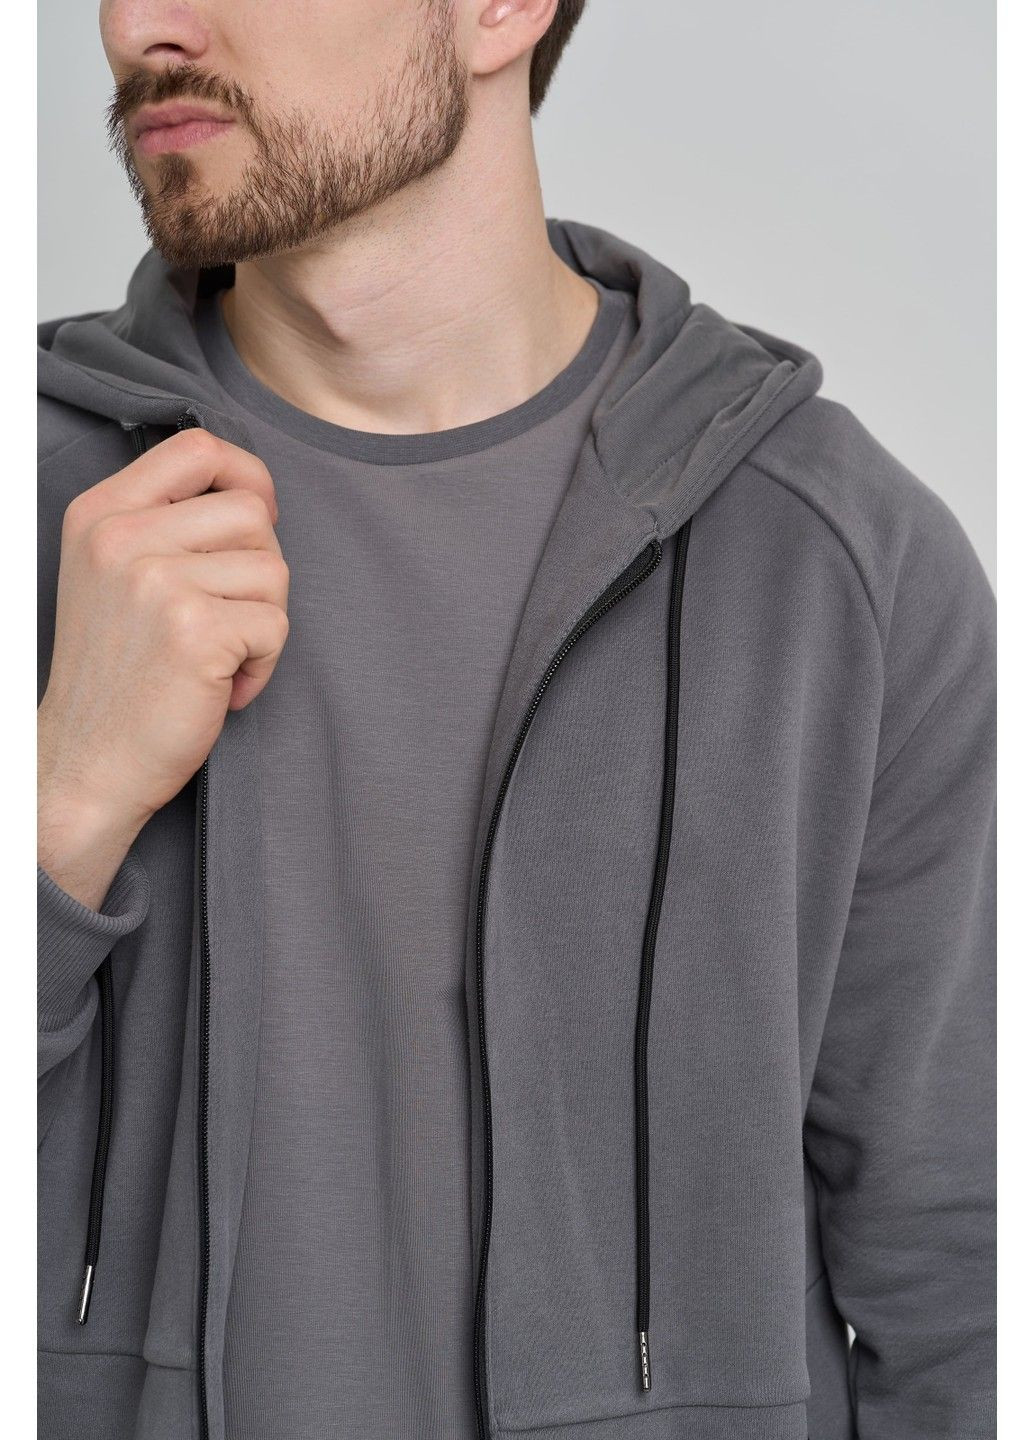 Спортивный костюм мужской ТРОЙКА весна осень 4ZIP с кофтой на замке + футболка серый Handy Wear (293275169)